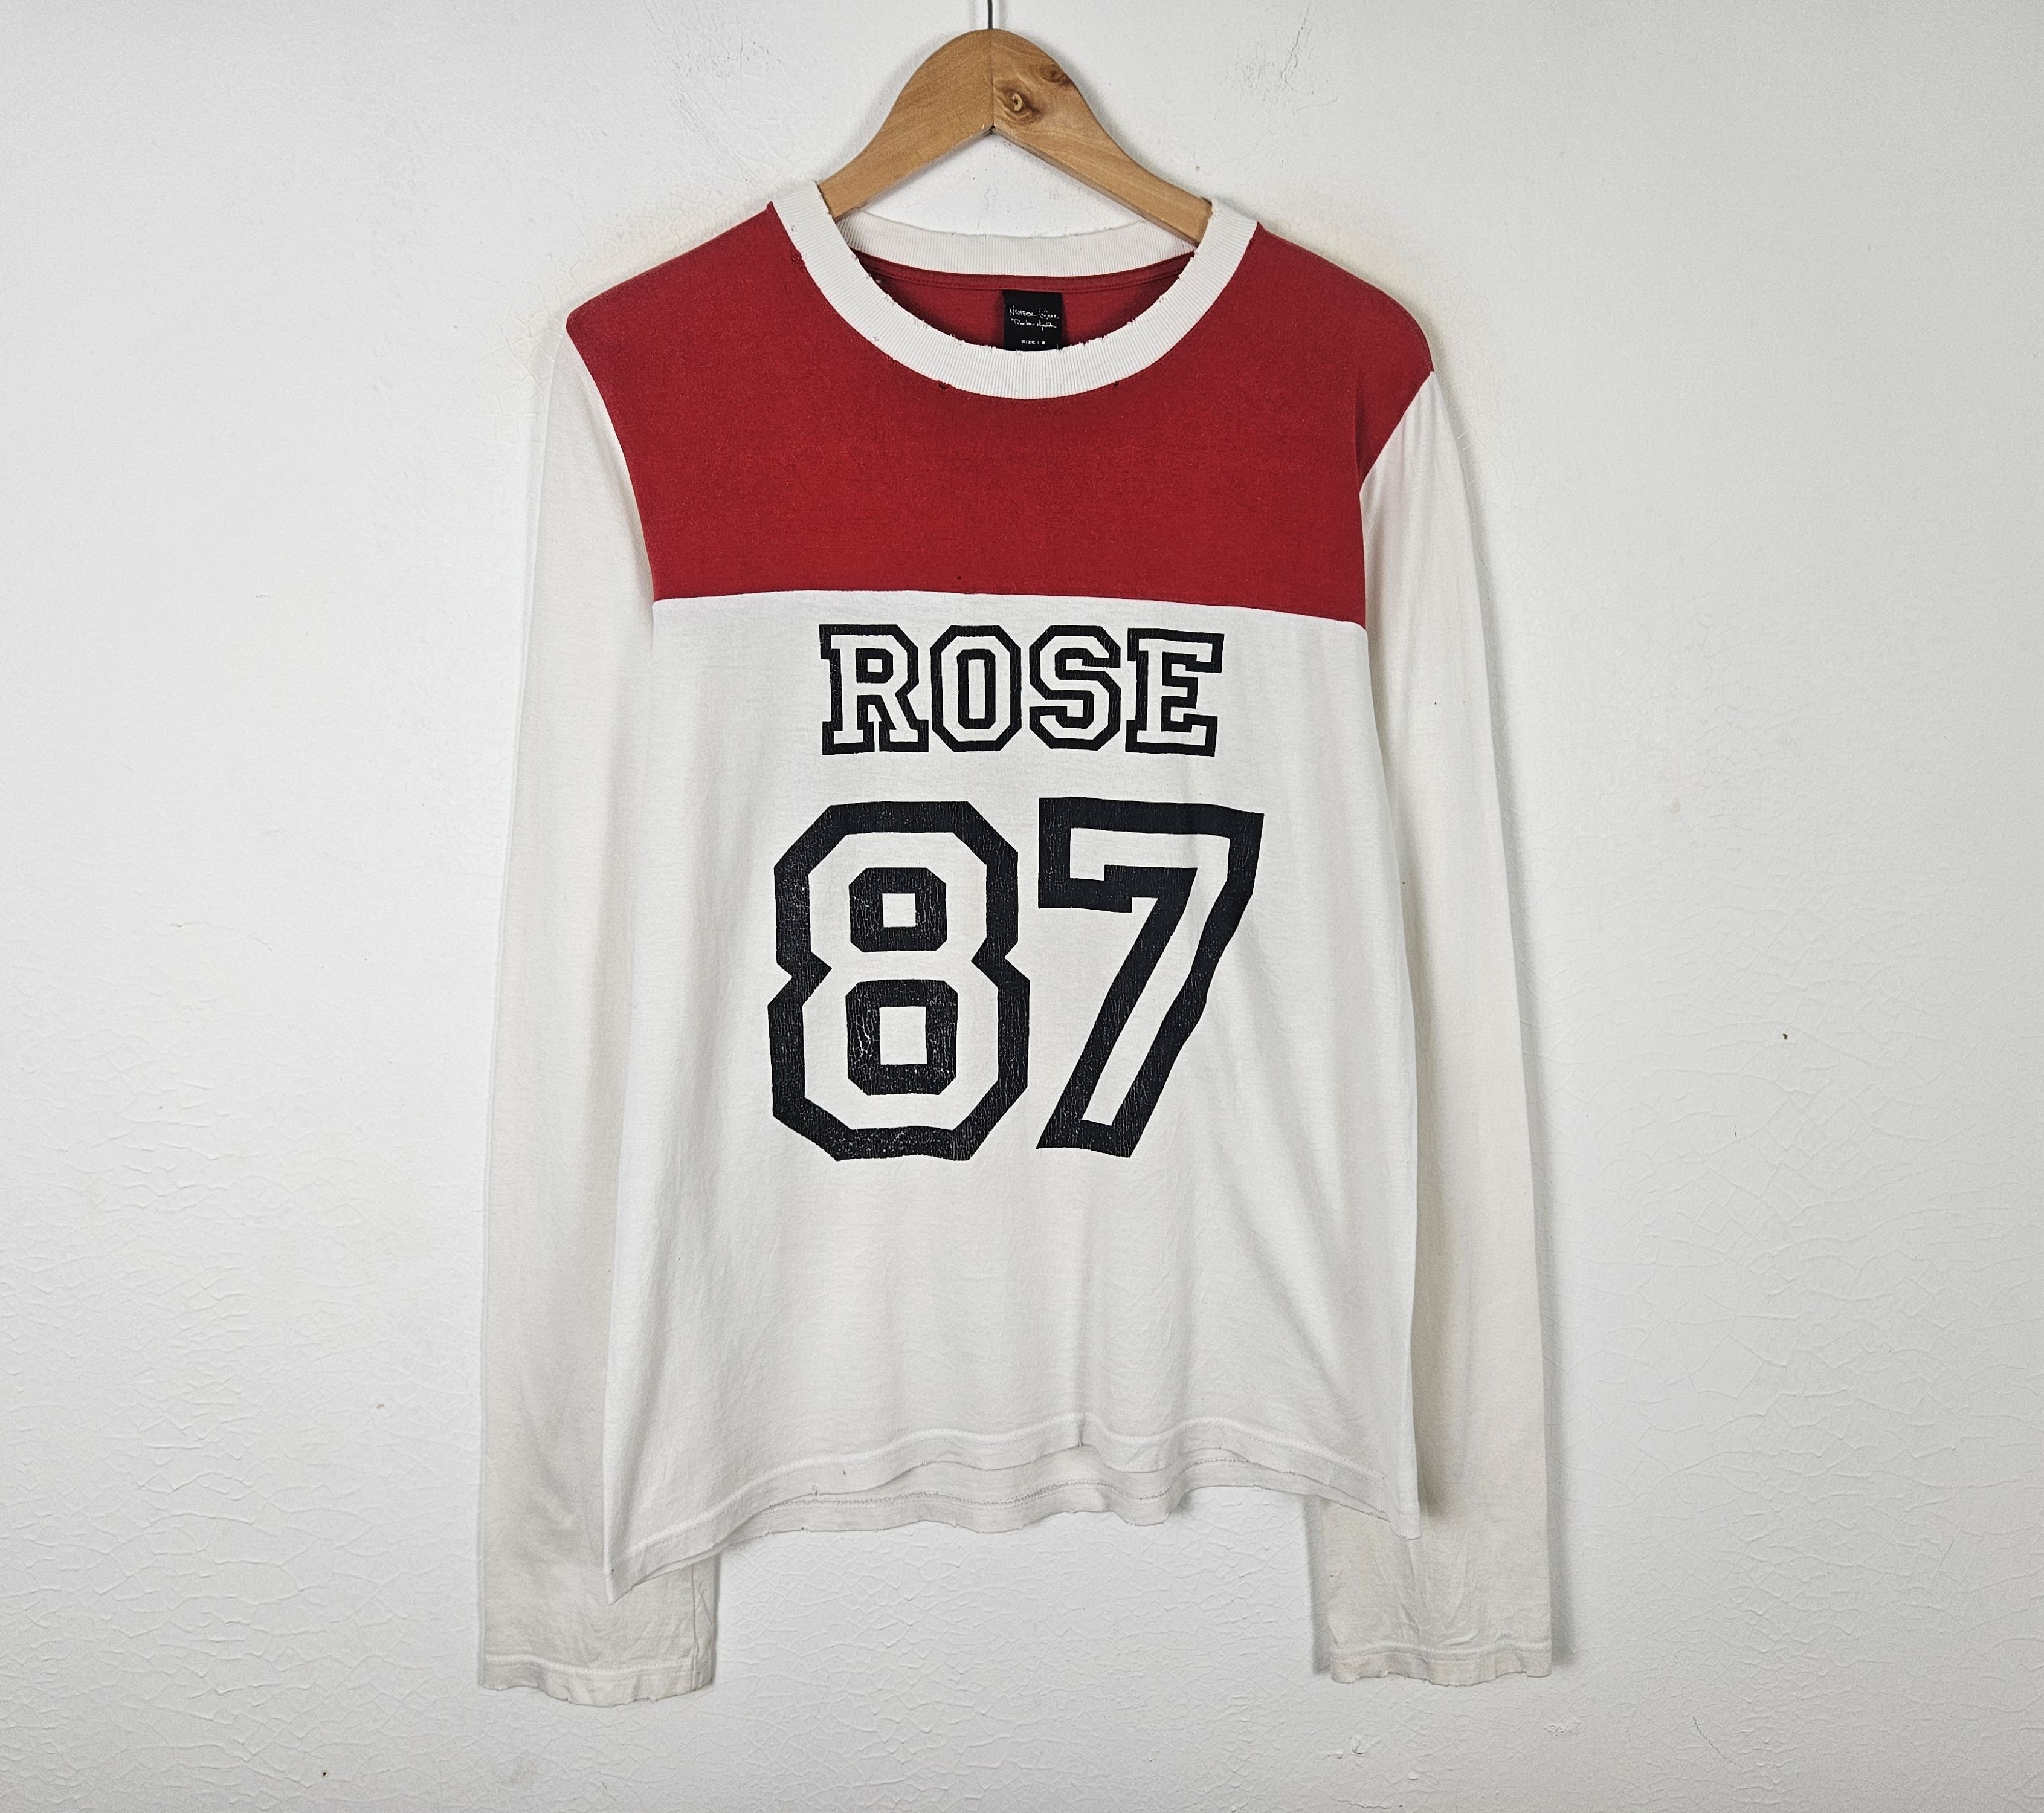 Number Nine Rose 87 shirt - 3